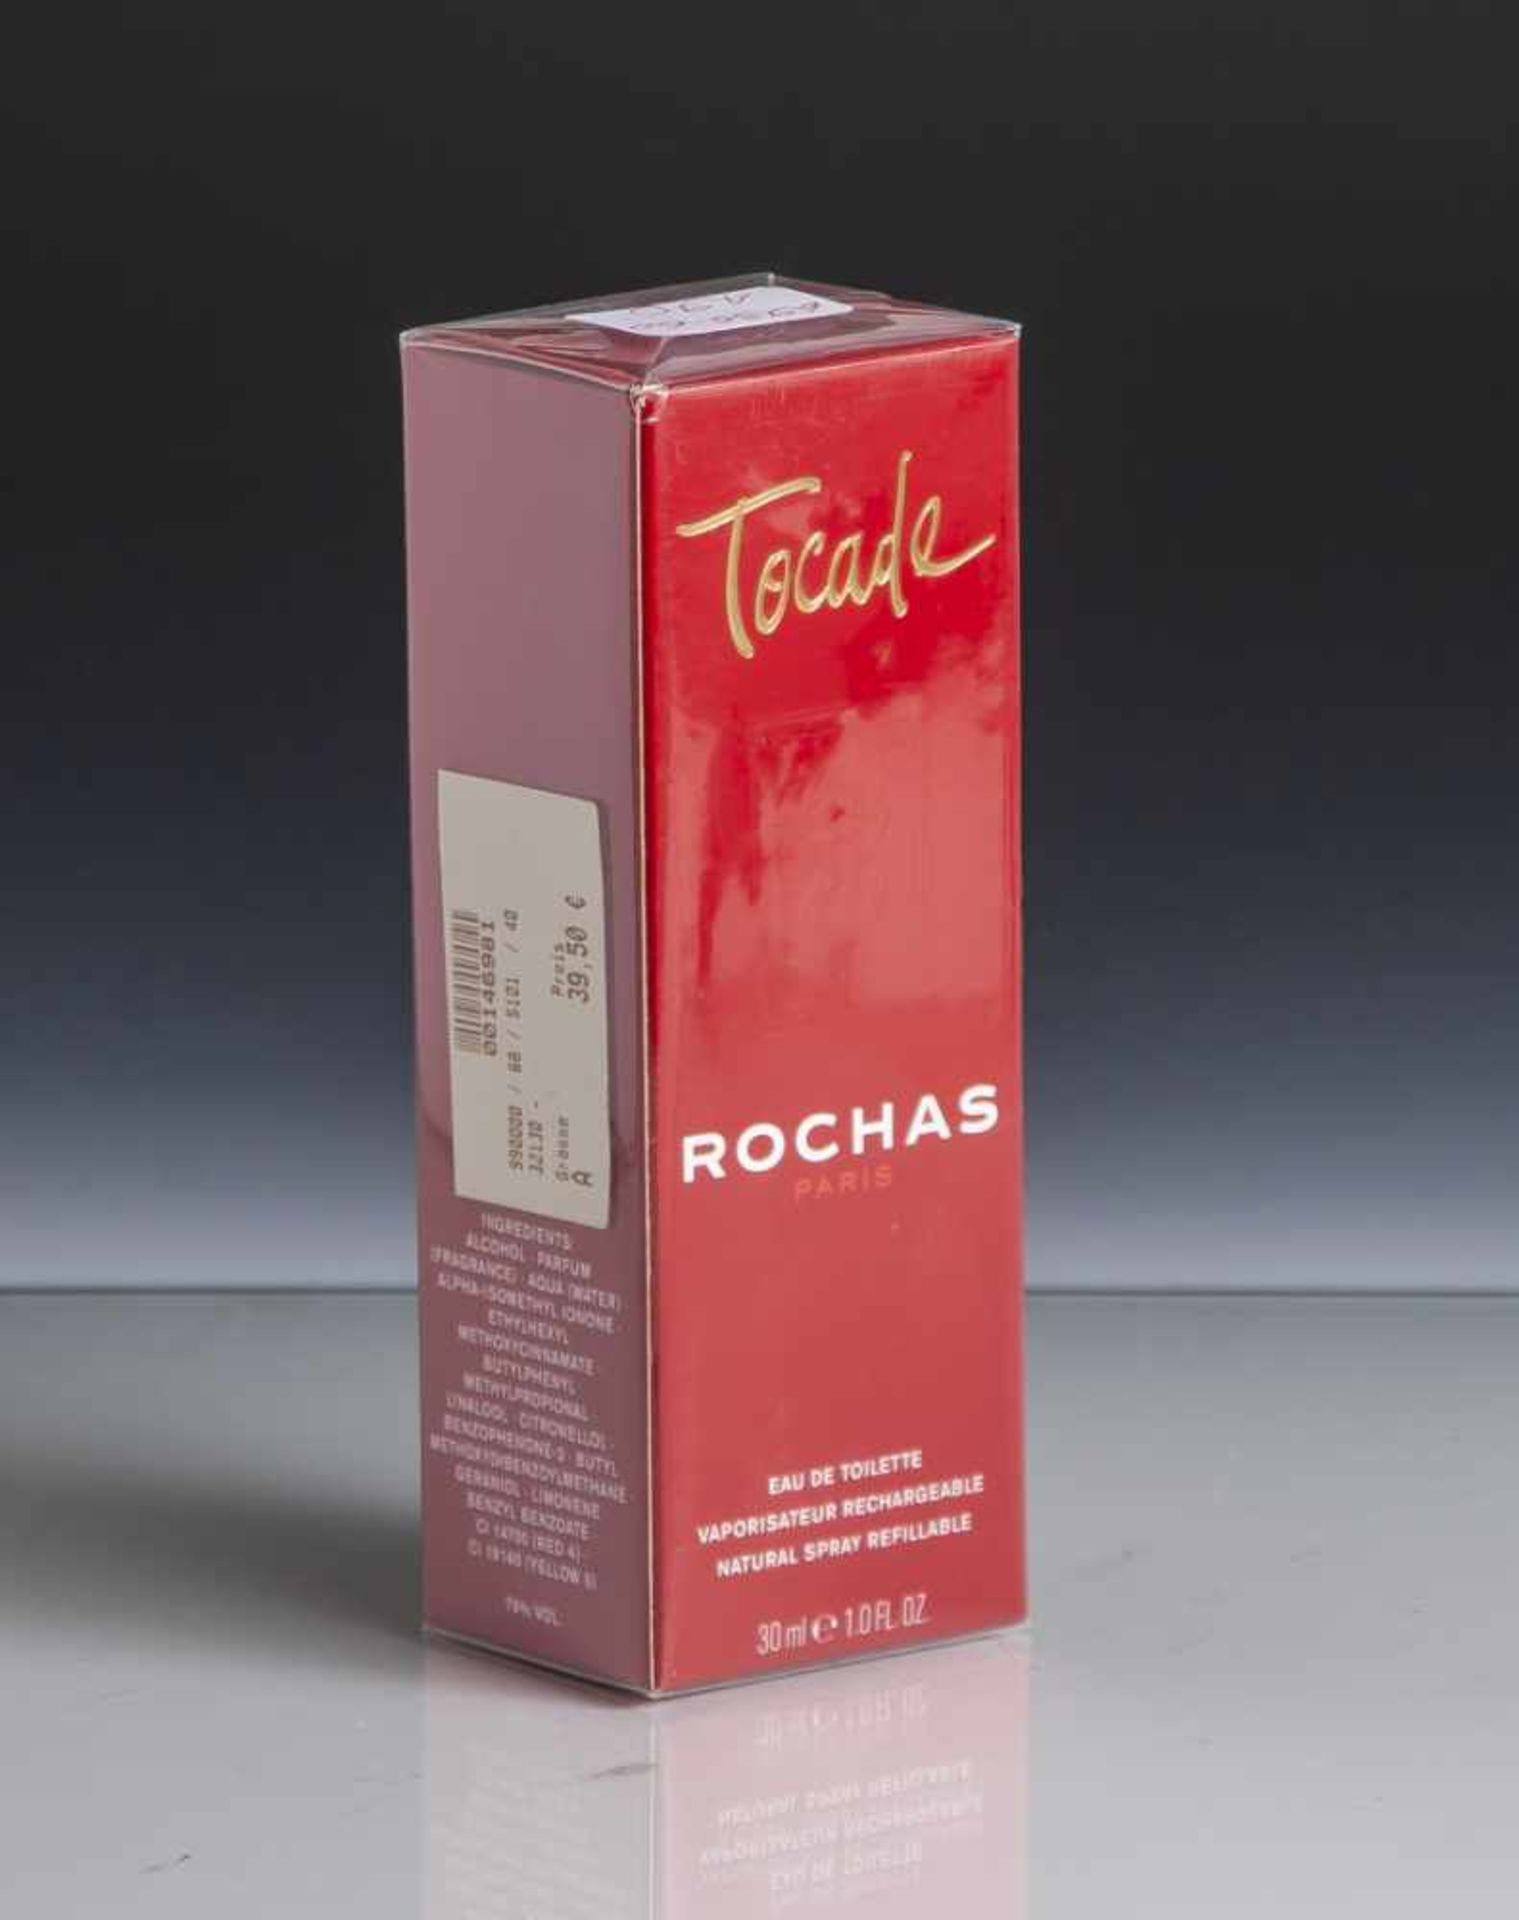 Eau de Toilette, Tocade, Rochas Paris, 30 ml, originalverpackt.